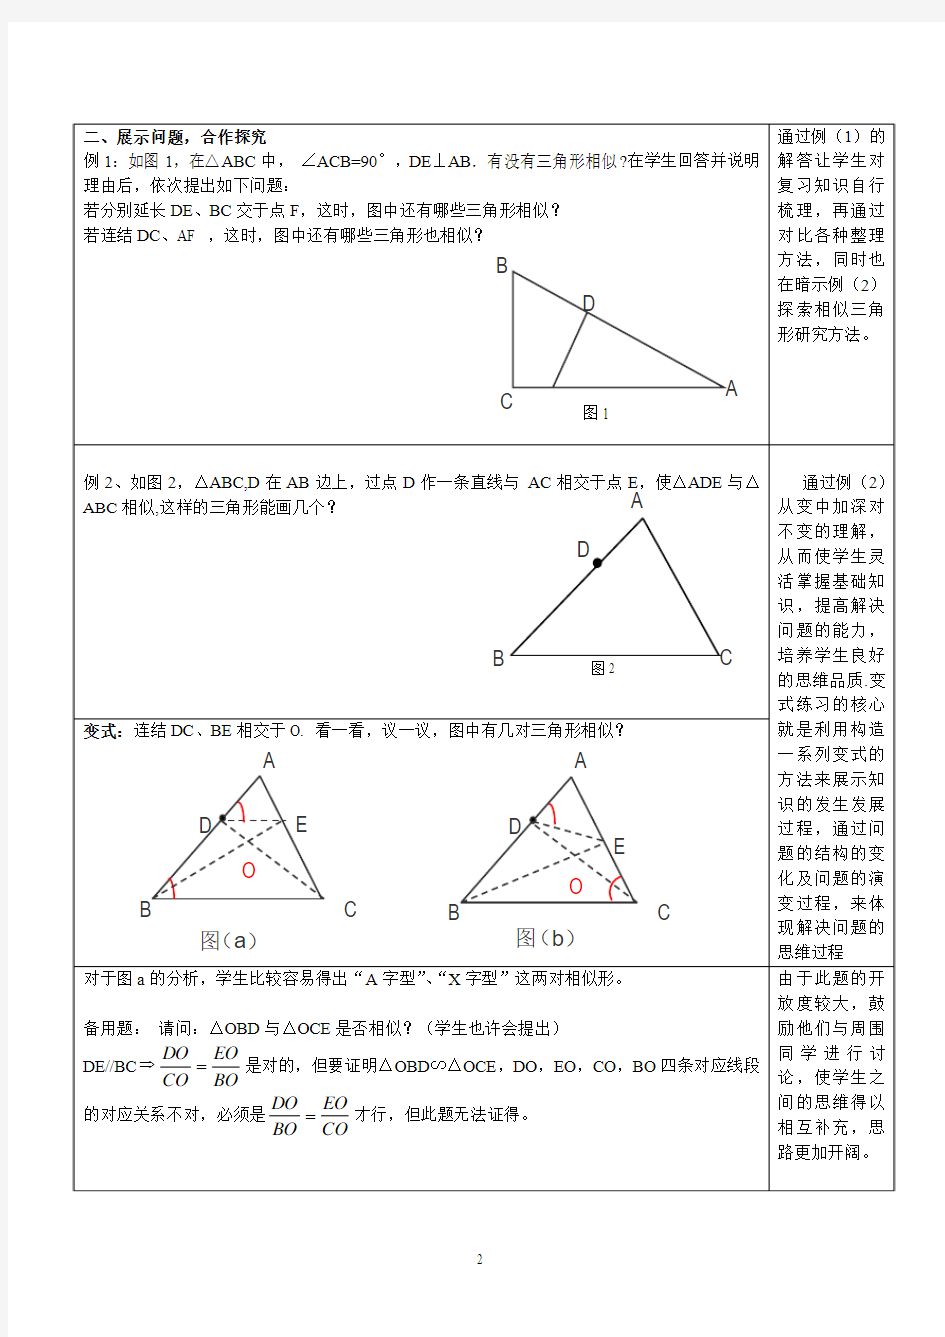 相似三角形判定(复习课)教案